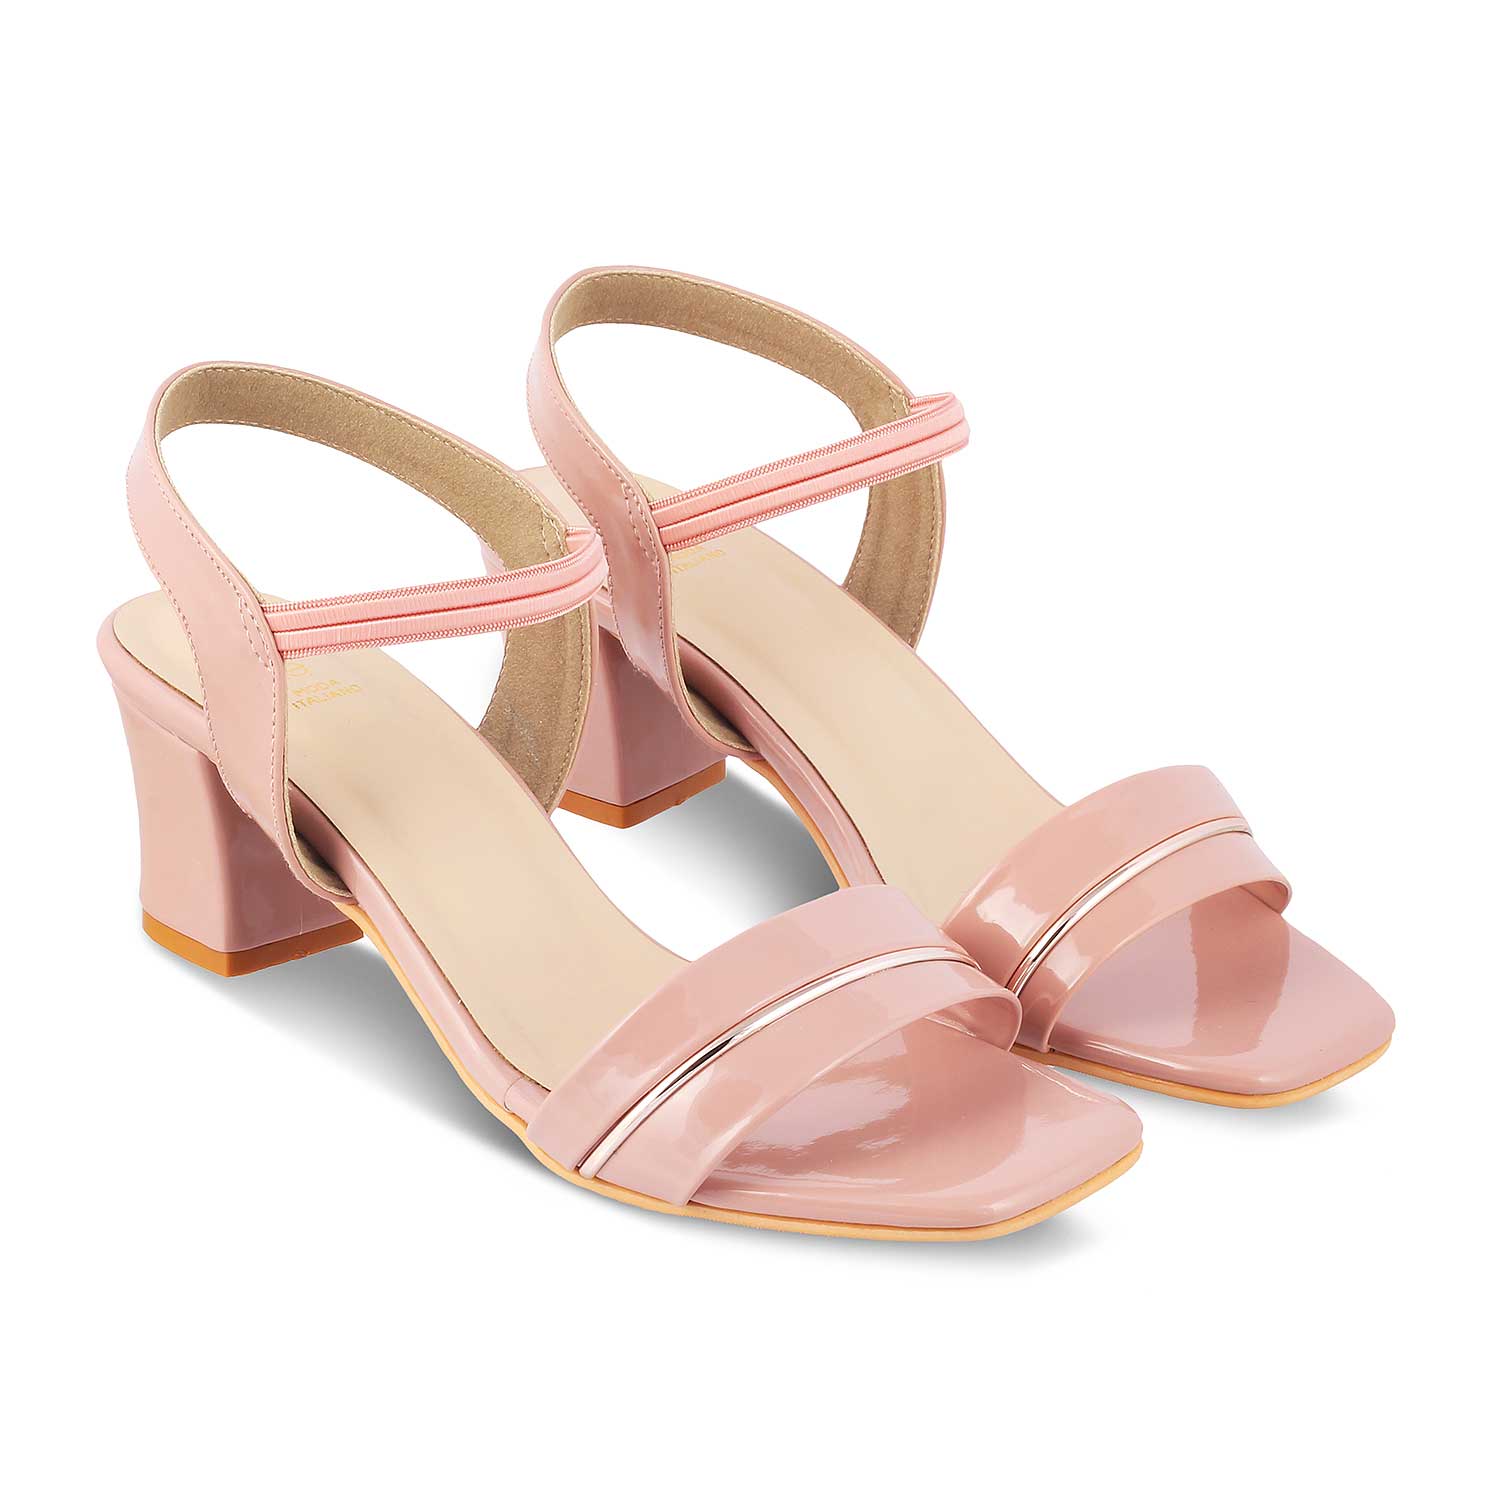 Tresmode-The Rachel Pink Women's Dress Block Heel Sandals Tresmode-Tresmode